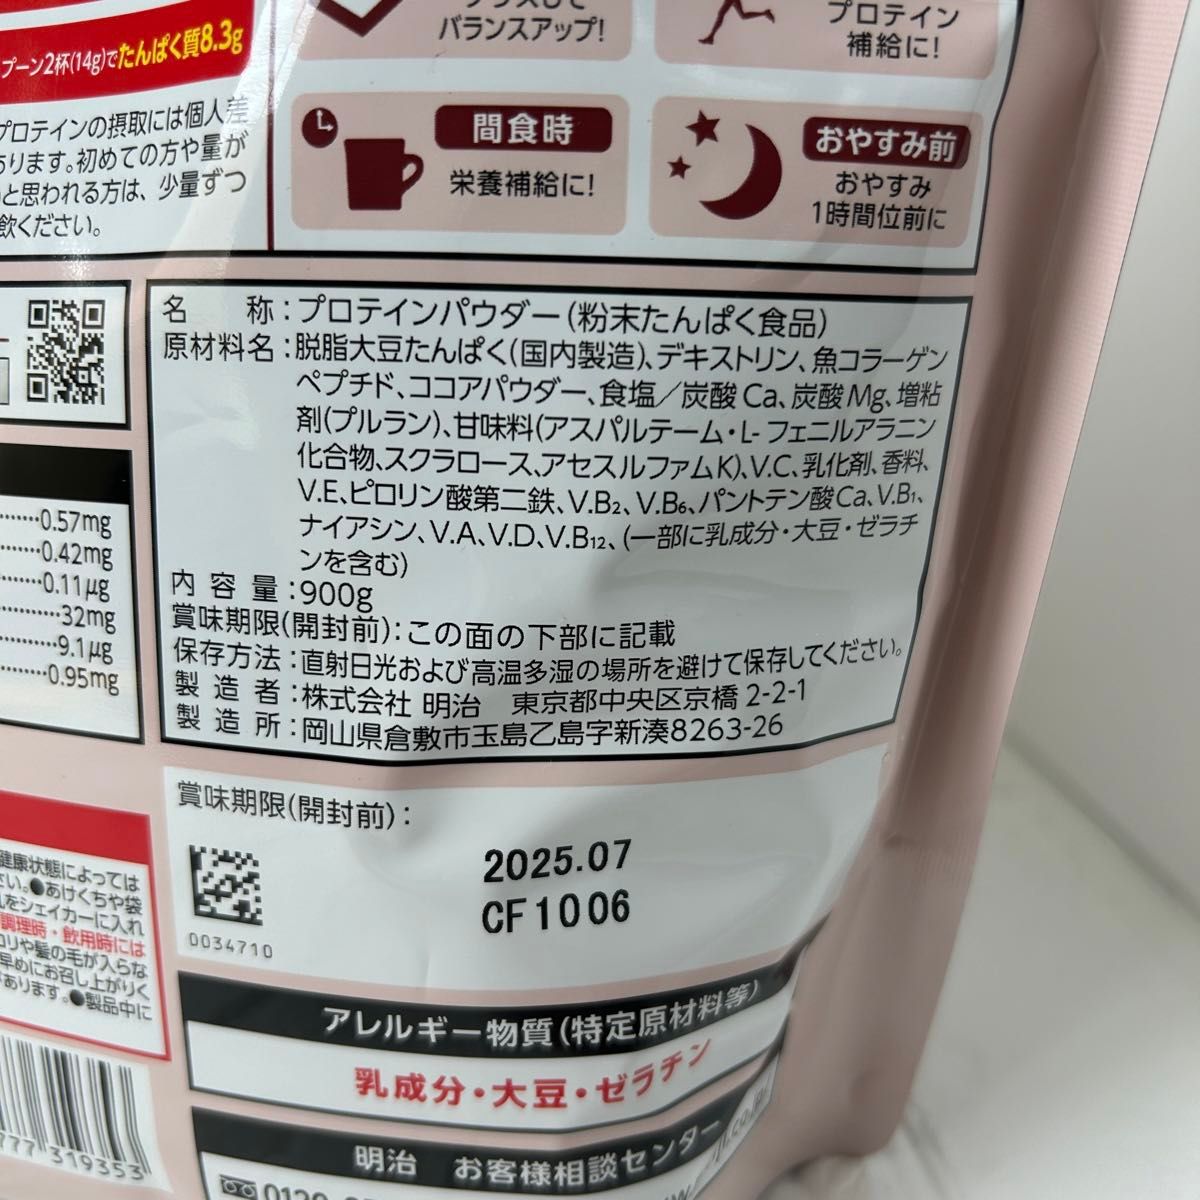 【新品未開封】 明治 ザバス フォーウーマン シェイプ&ビューティ チョコレート風味 900g